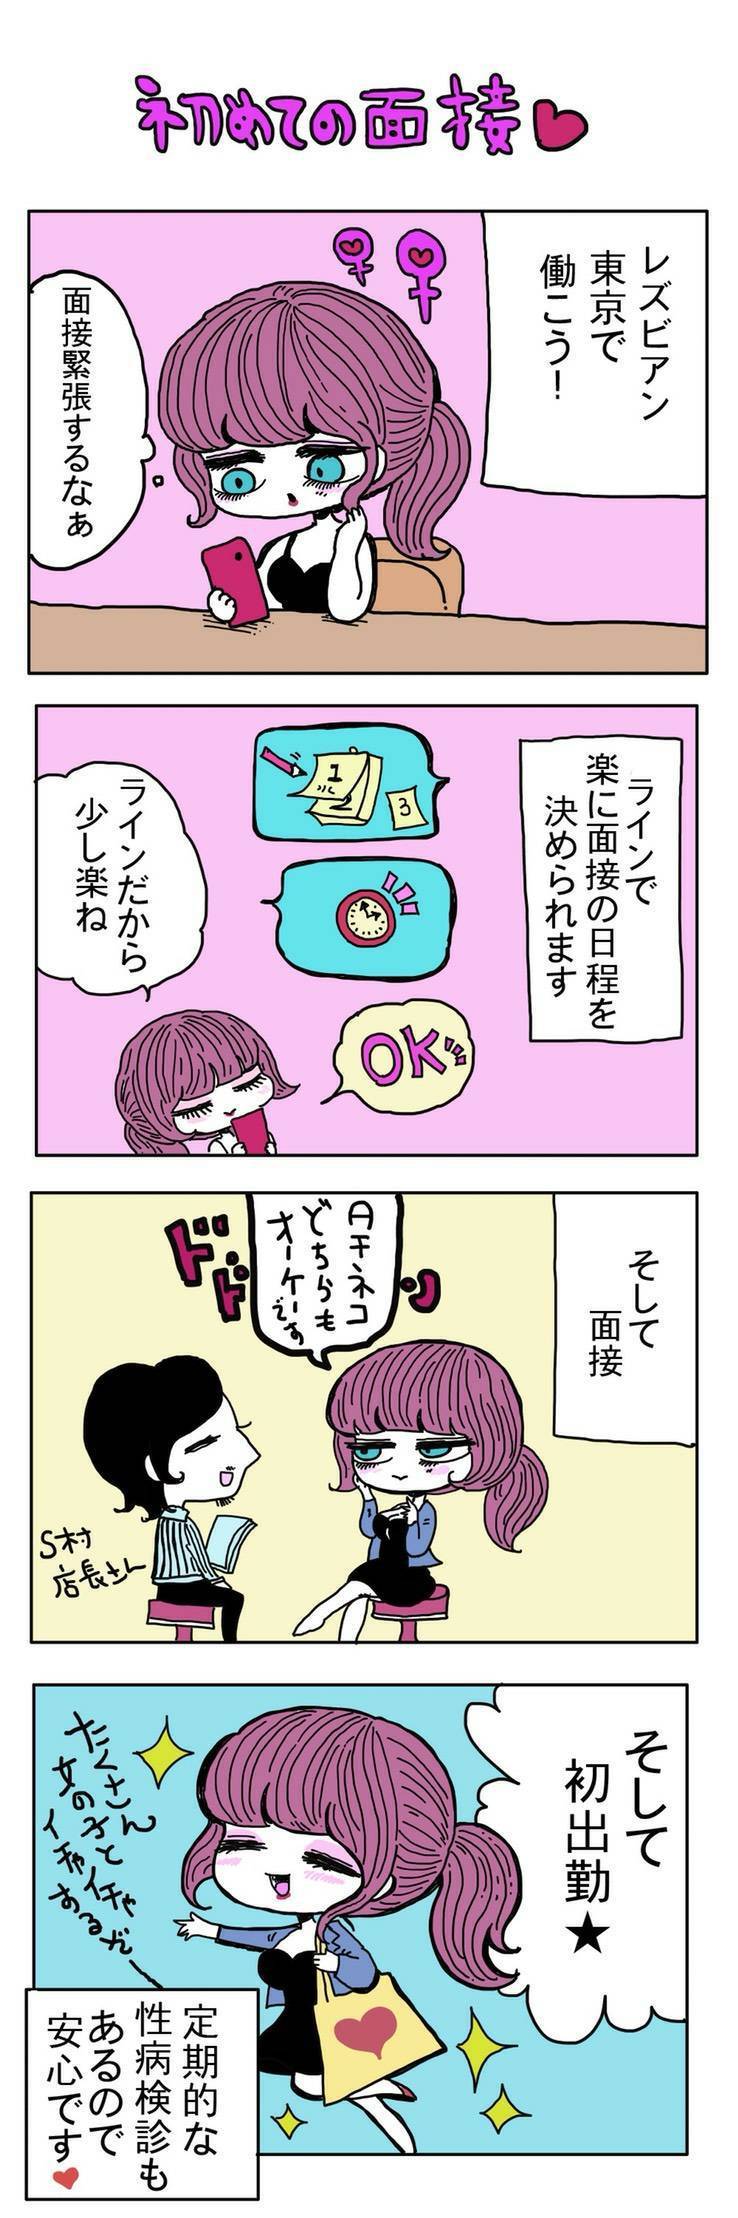 レズビアン東京 漫画2